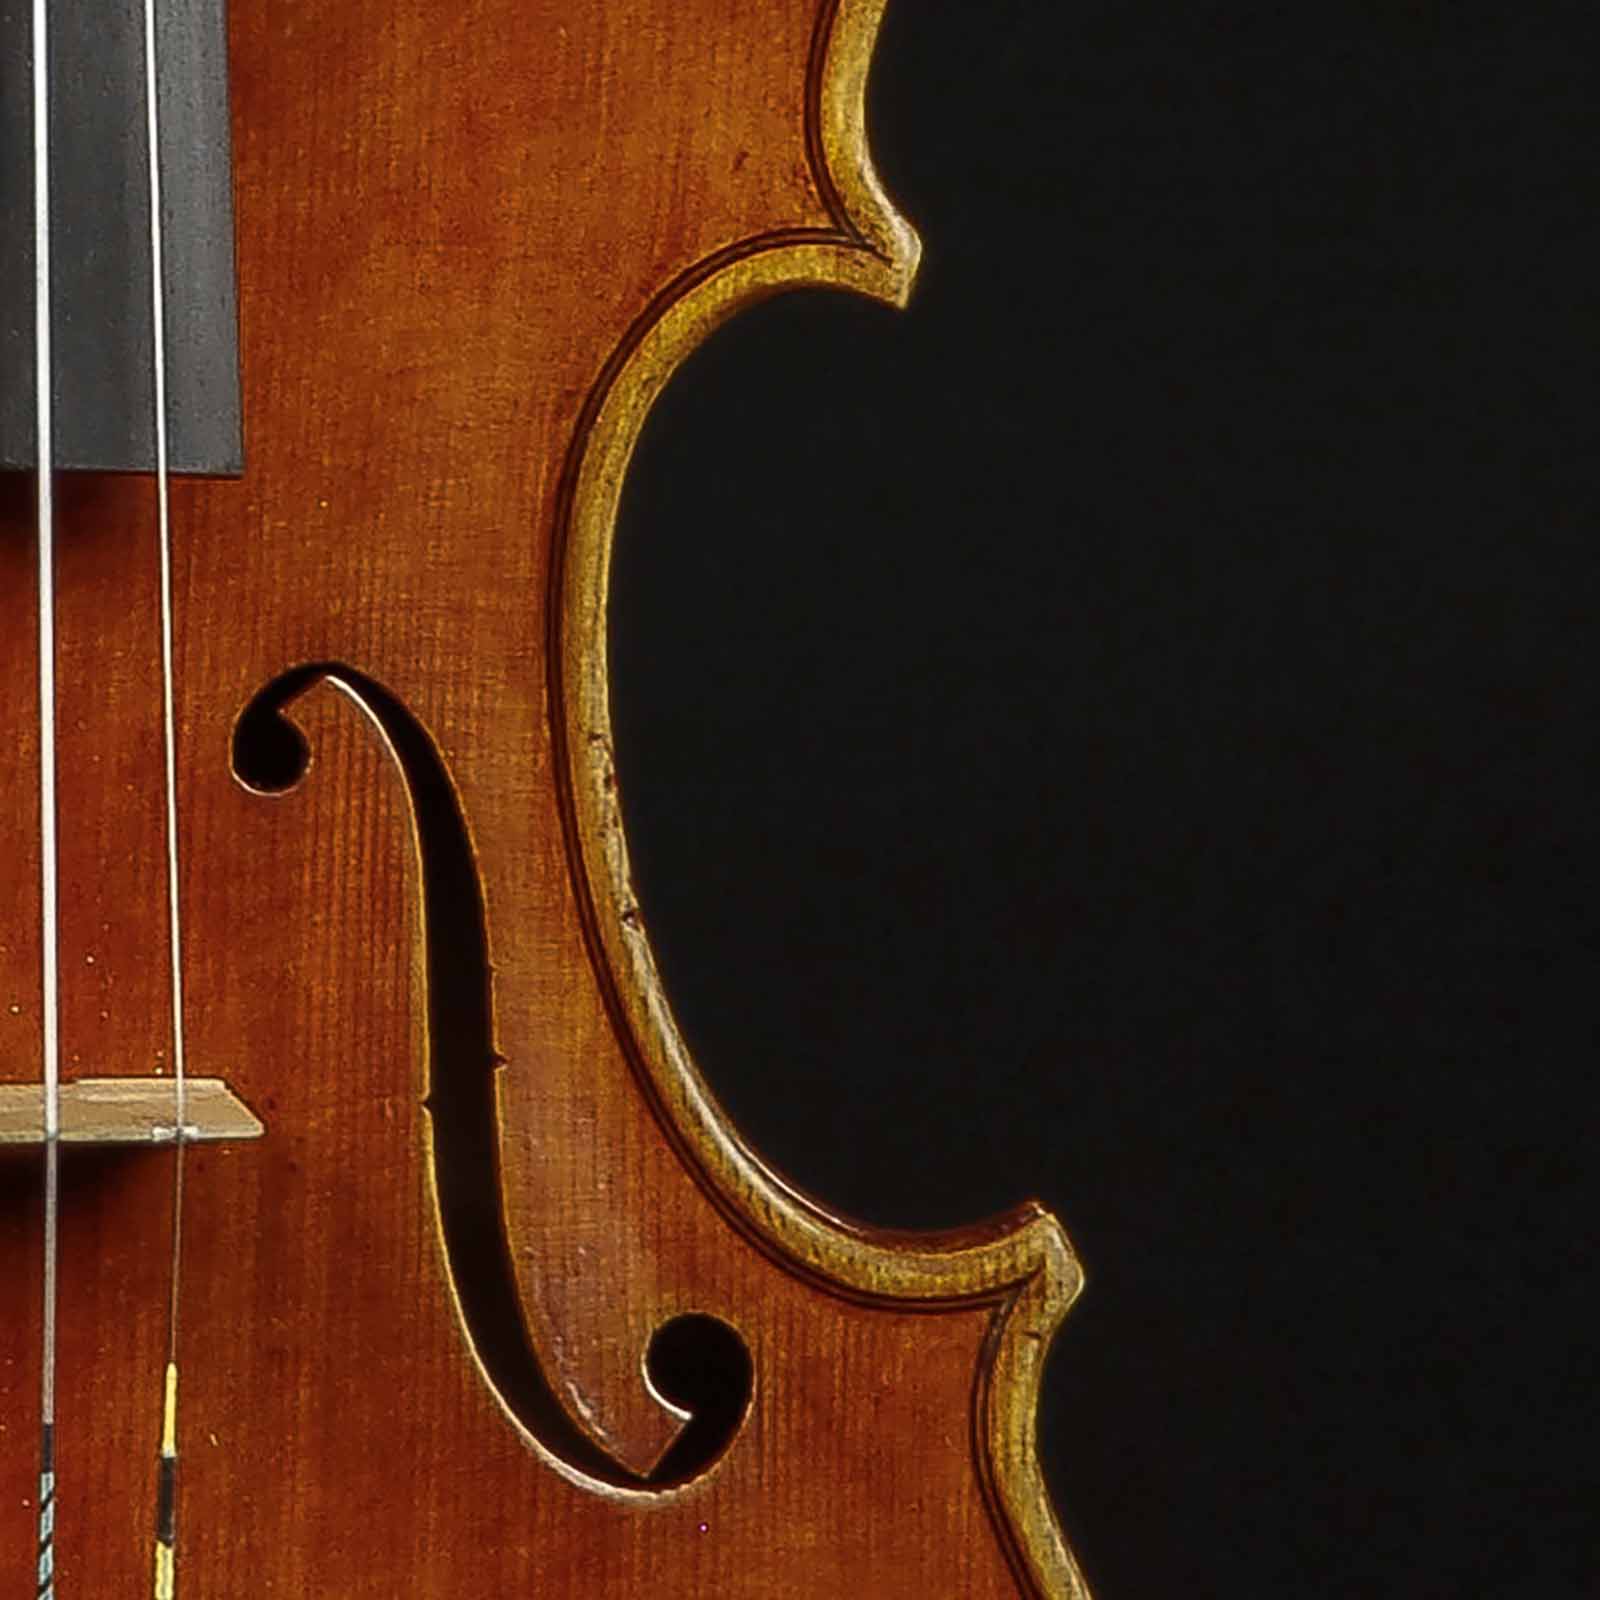 Antonio Stradivari Cremona c.1700 “Teatro Ponchielli“ - Image 3